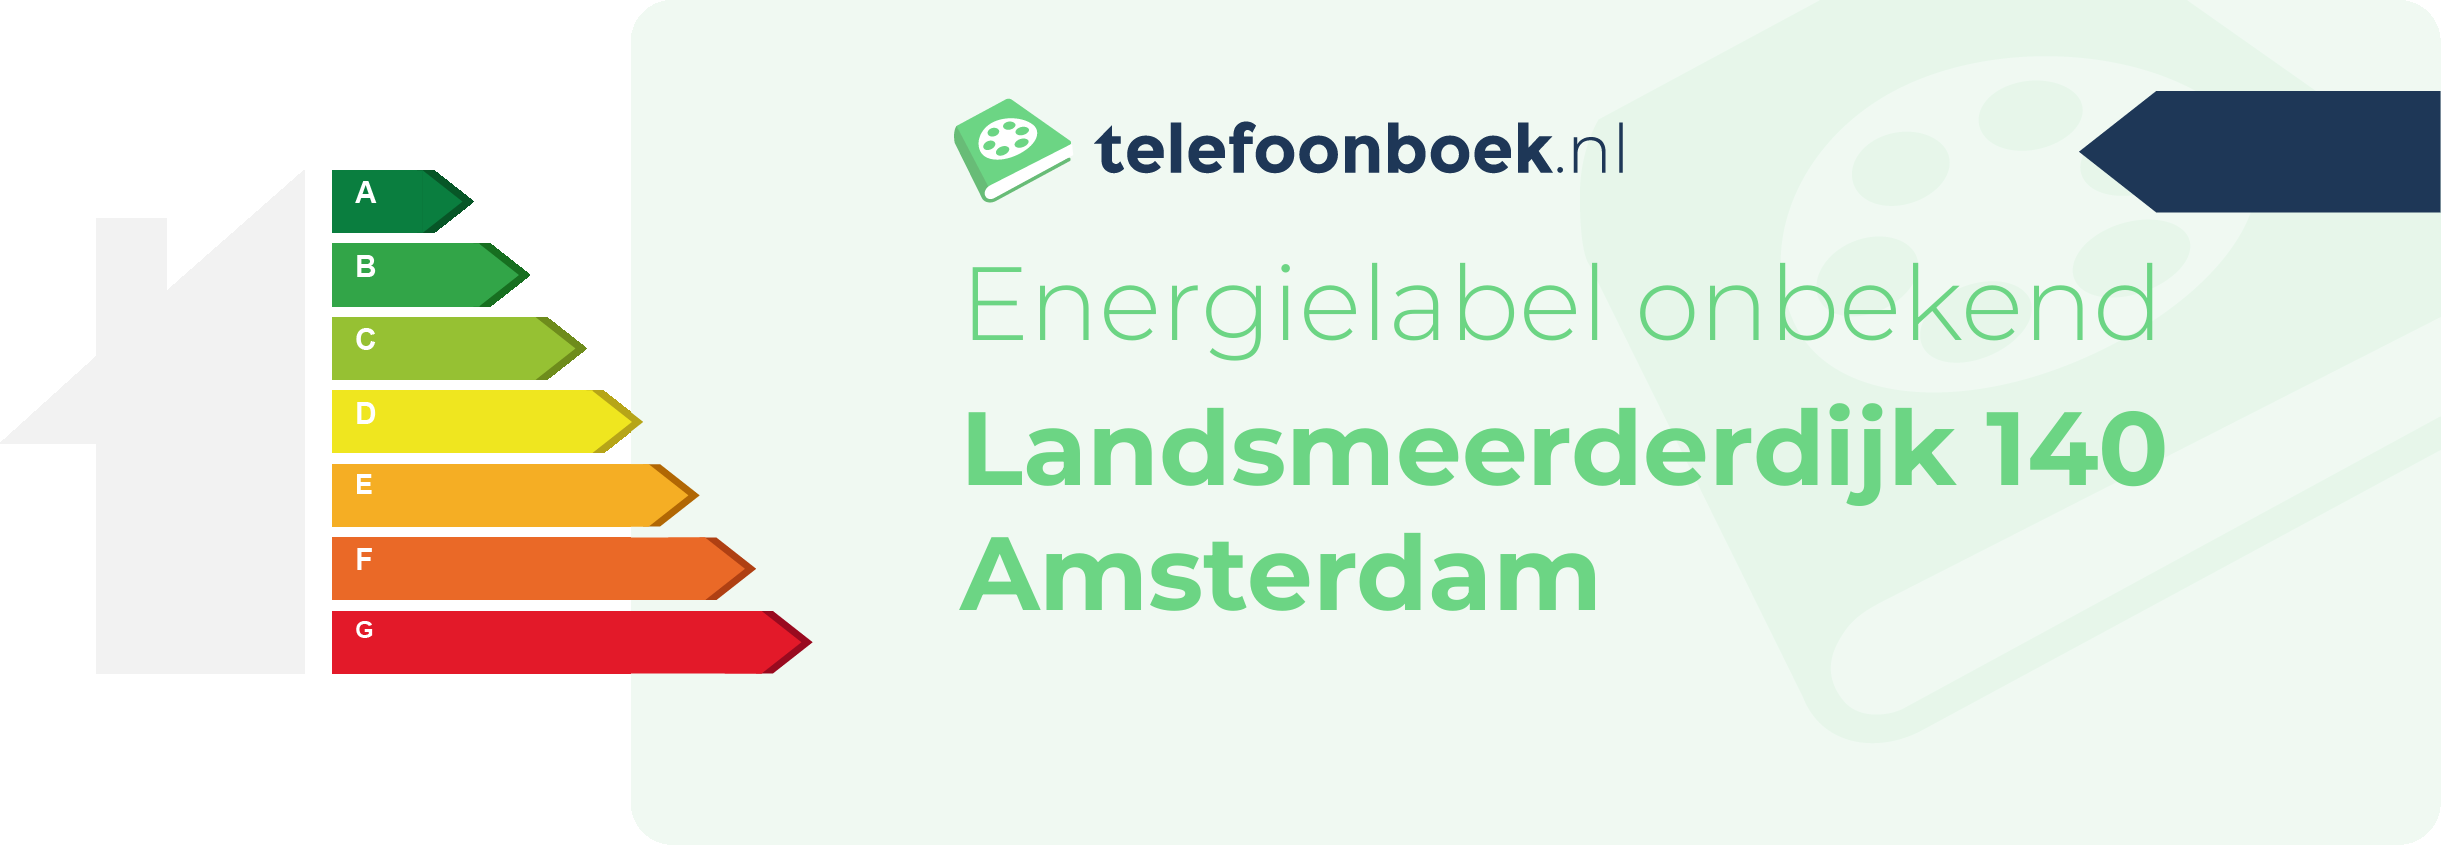 Energielabel Landsmeerderdijk 140 Amsterdam